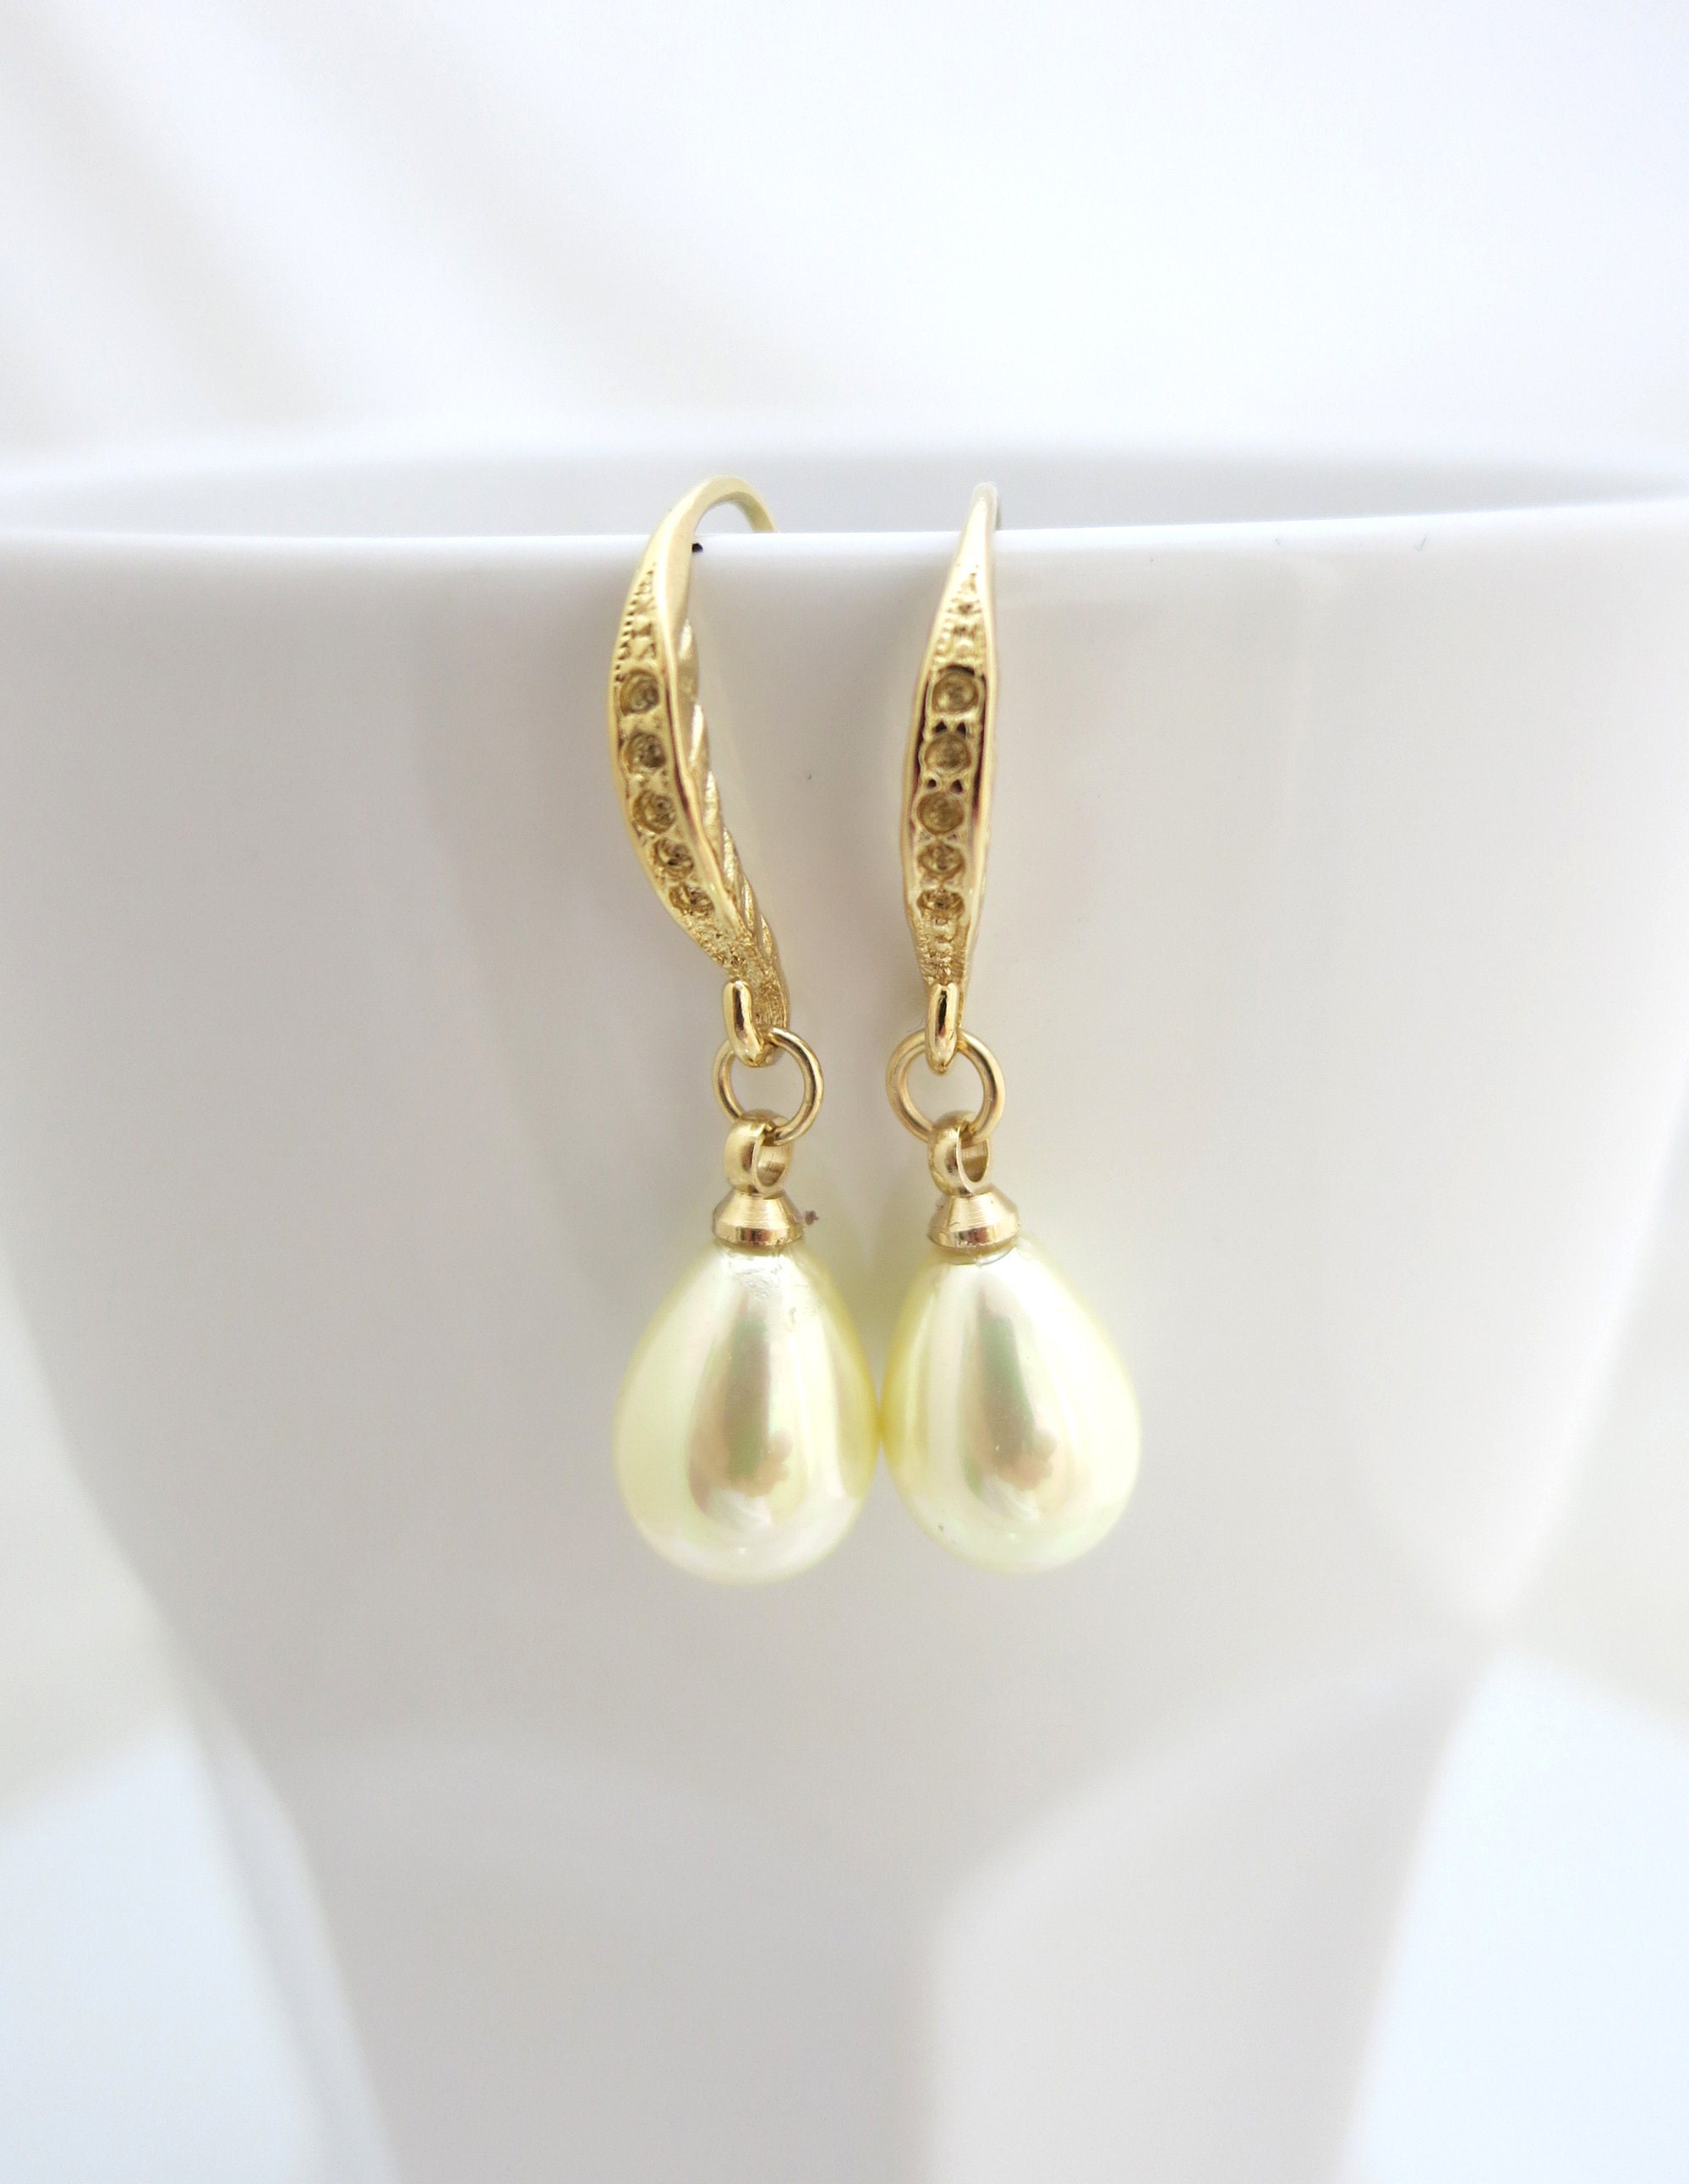 Pearl Earrings, Gold Dangle Earrings Set With Ivory Teardrop Pearls ...